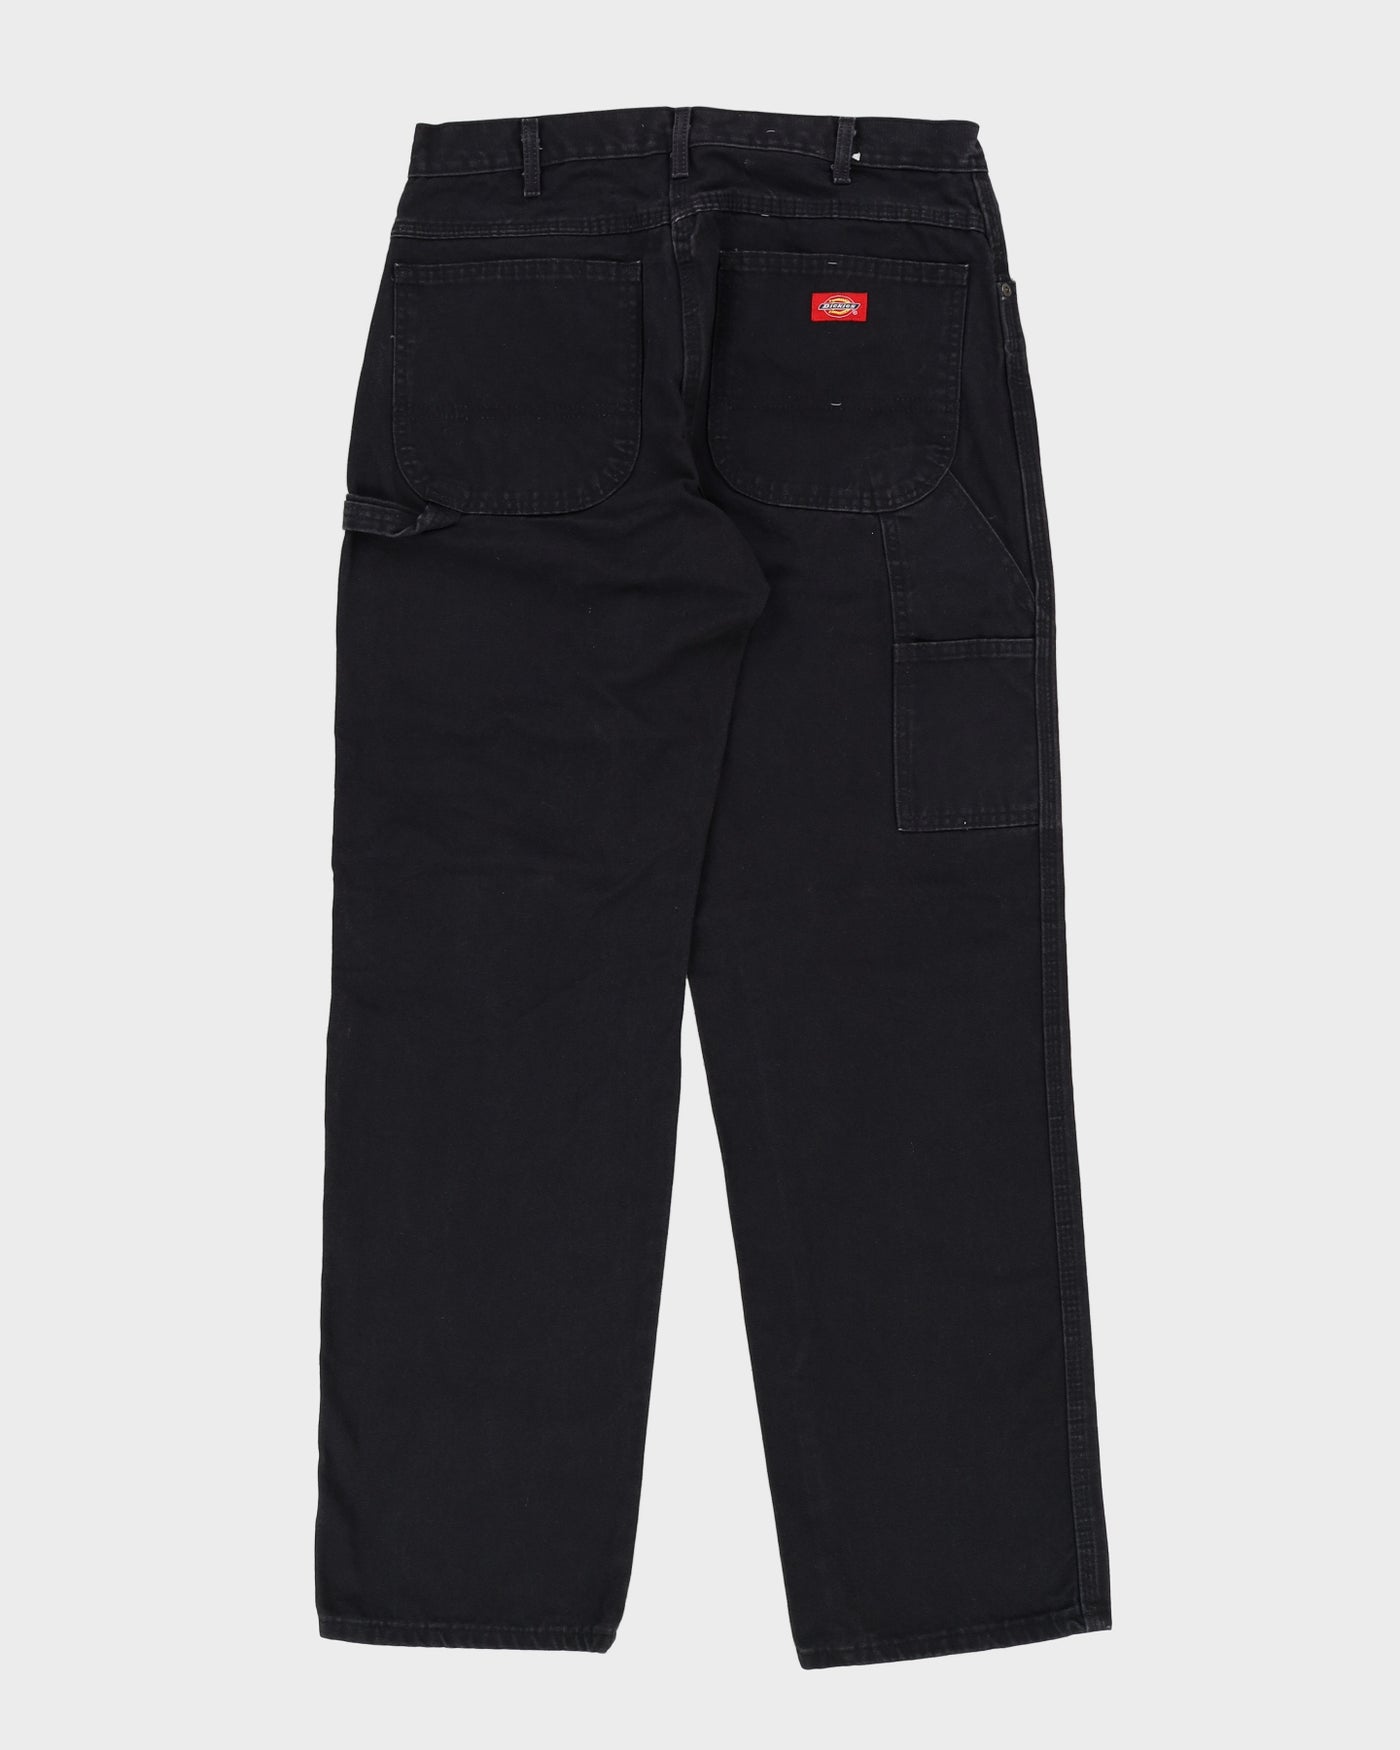 Dickies Black Workwear Jeans - W34 L33